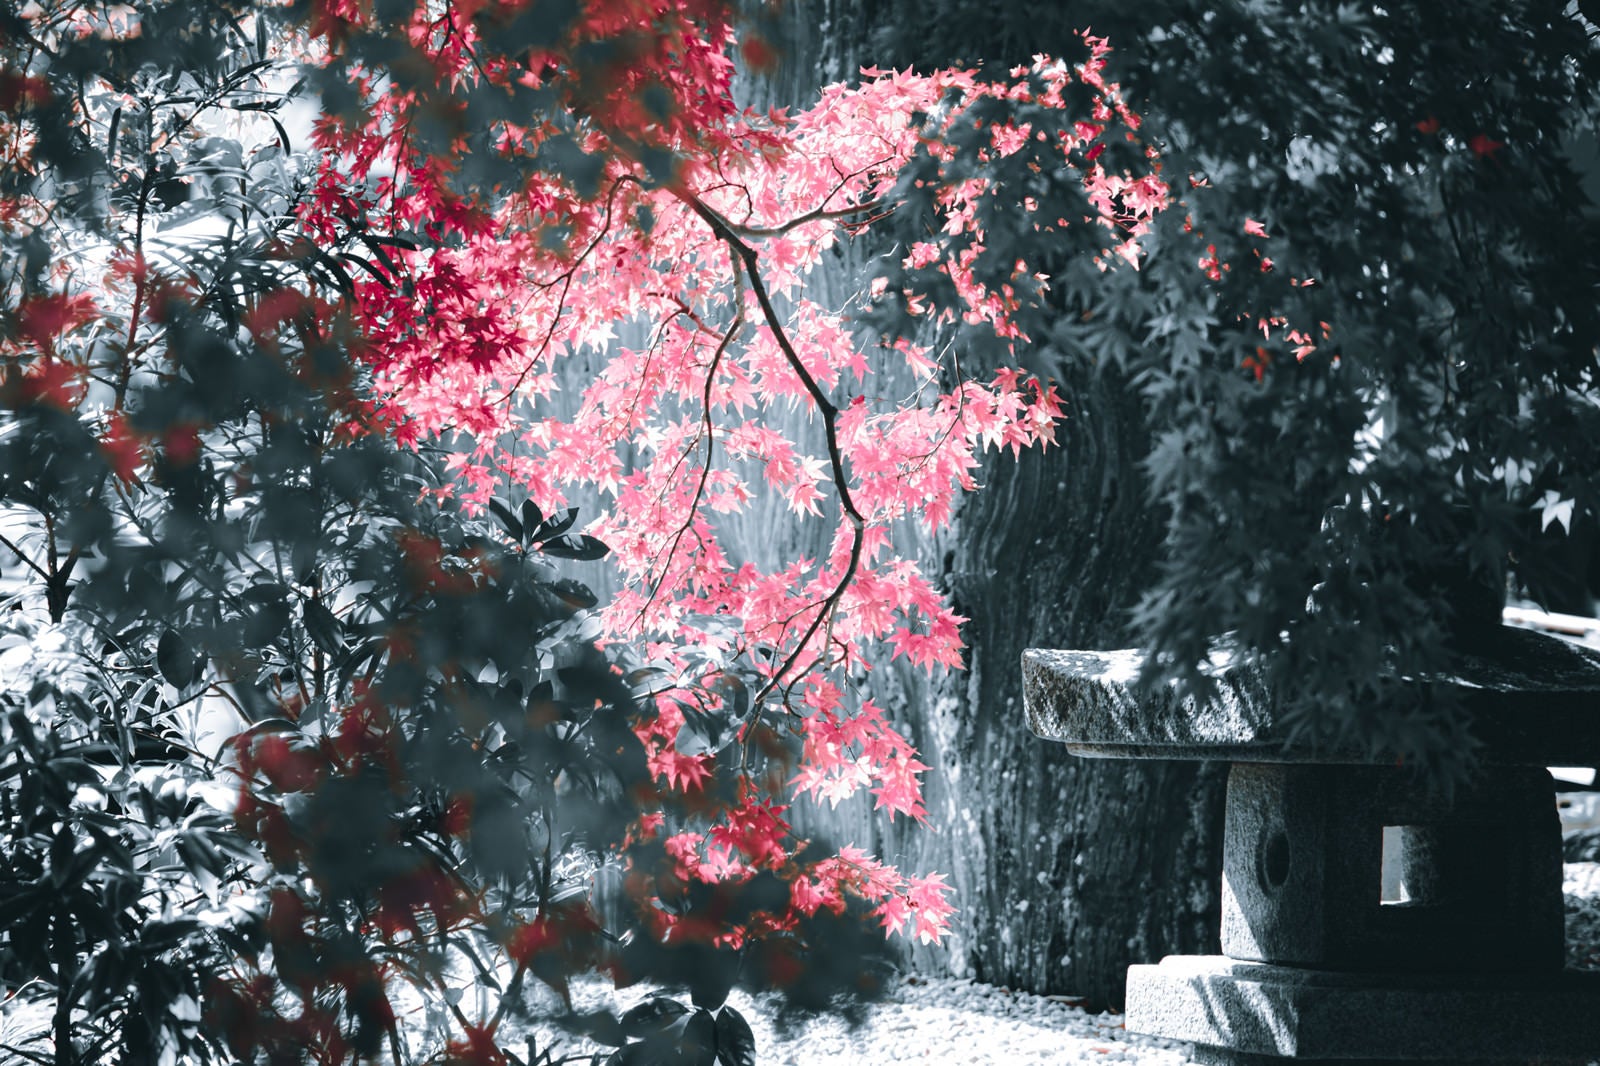 「光射す紅葉とモノクロの世界」の写真